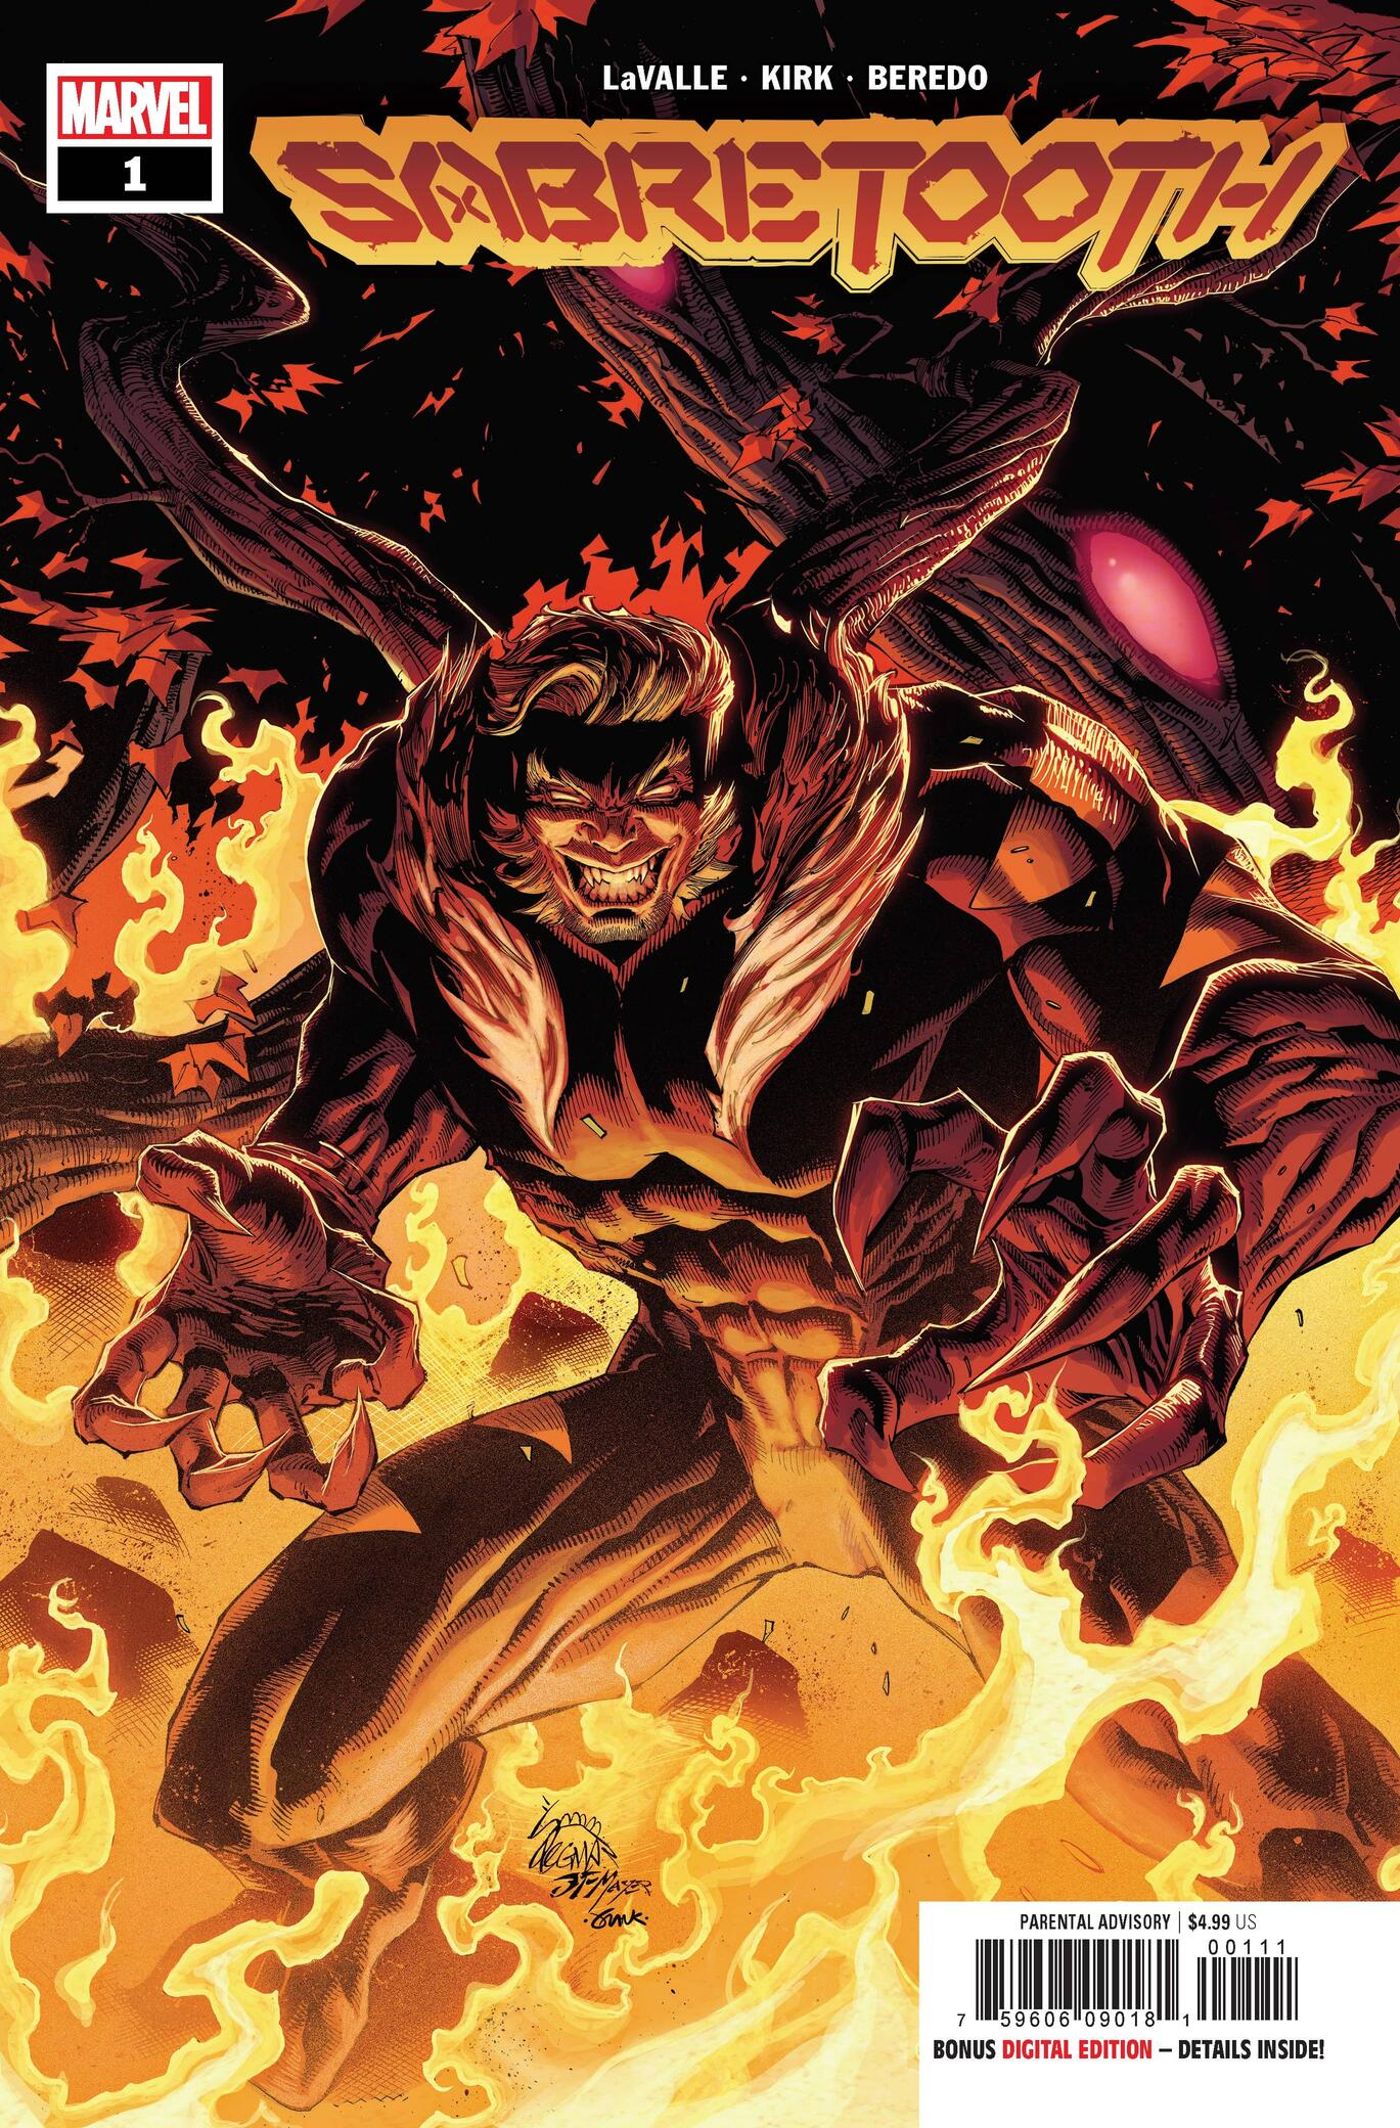 Sabretooth Returns in 2022 in Brand-New X-Men Series